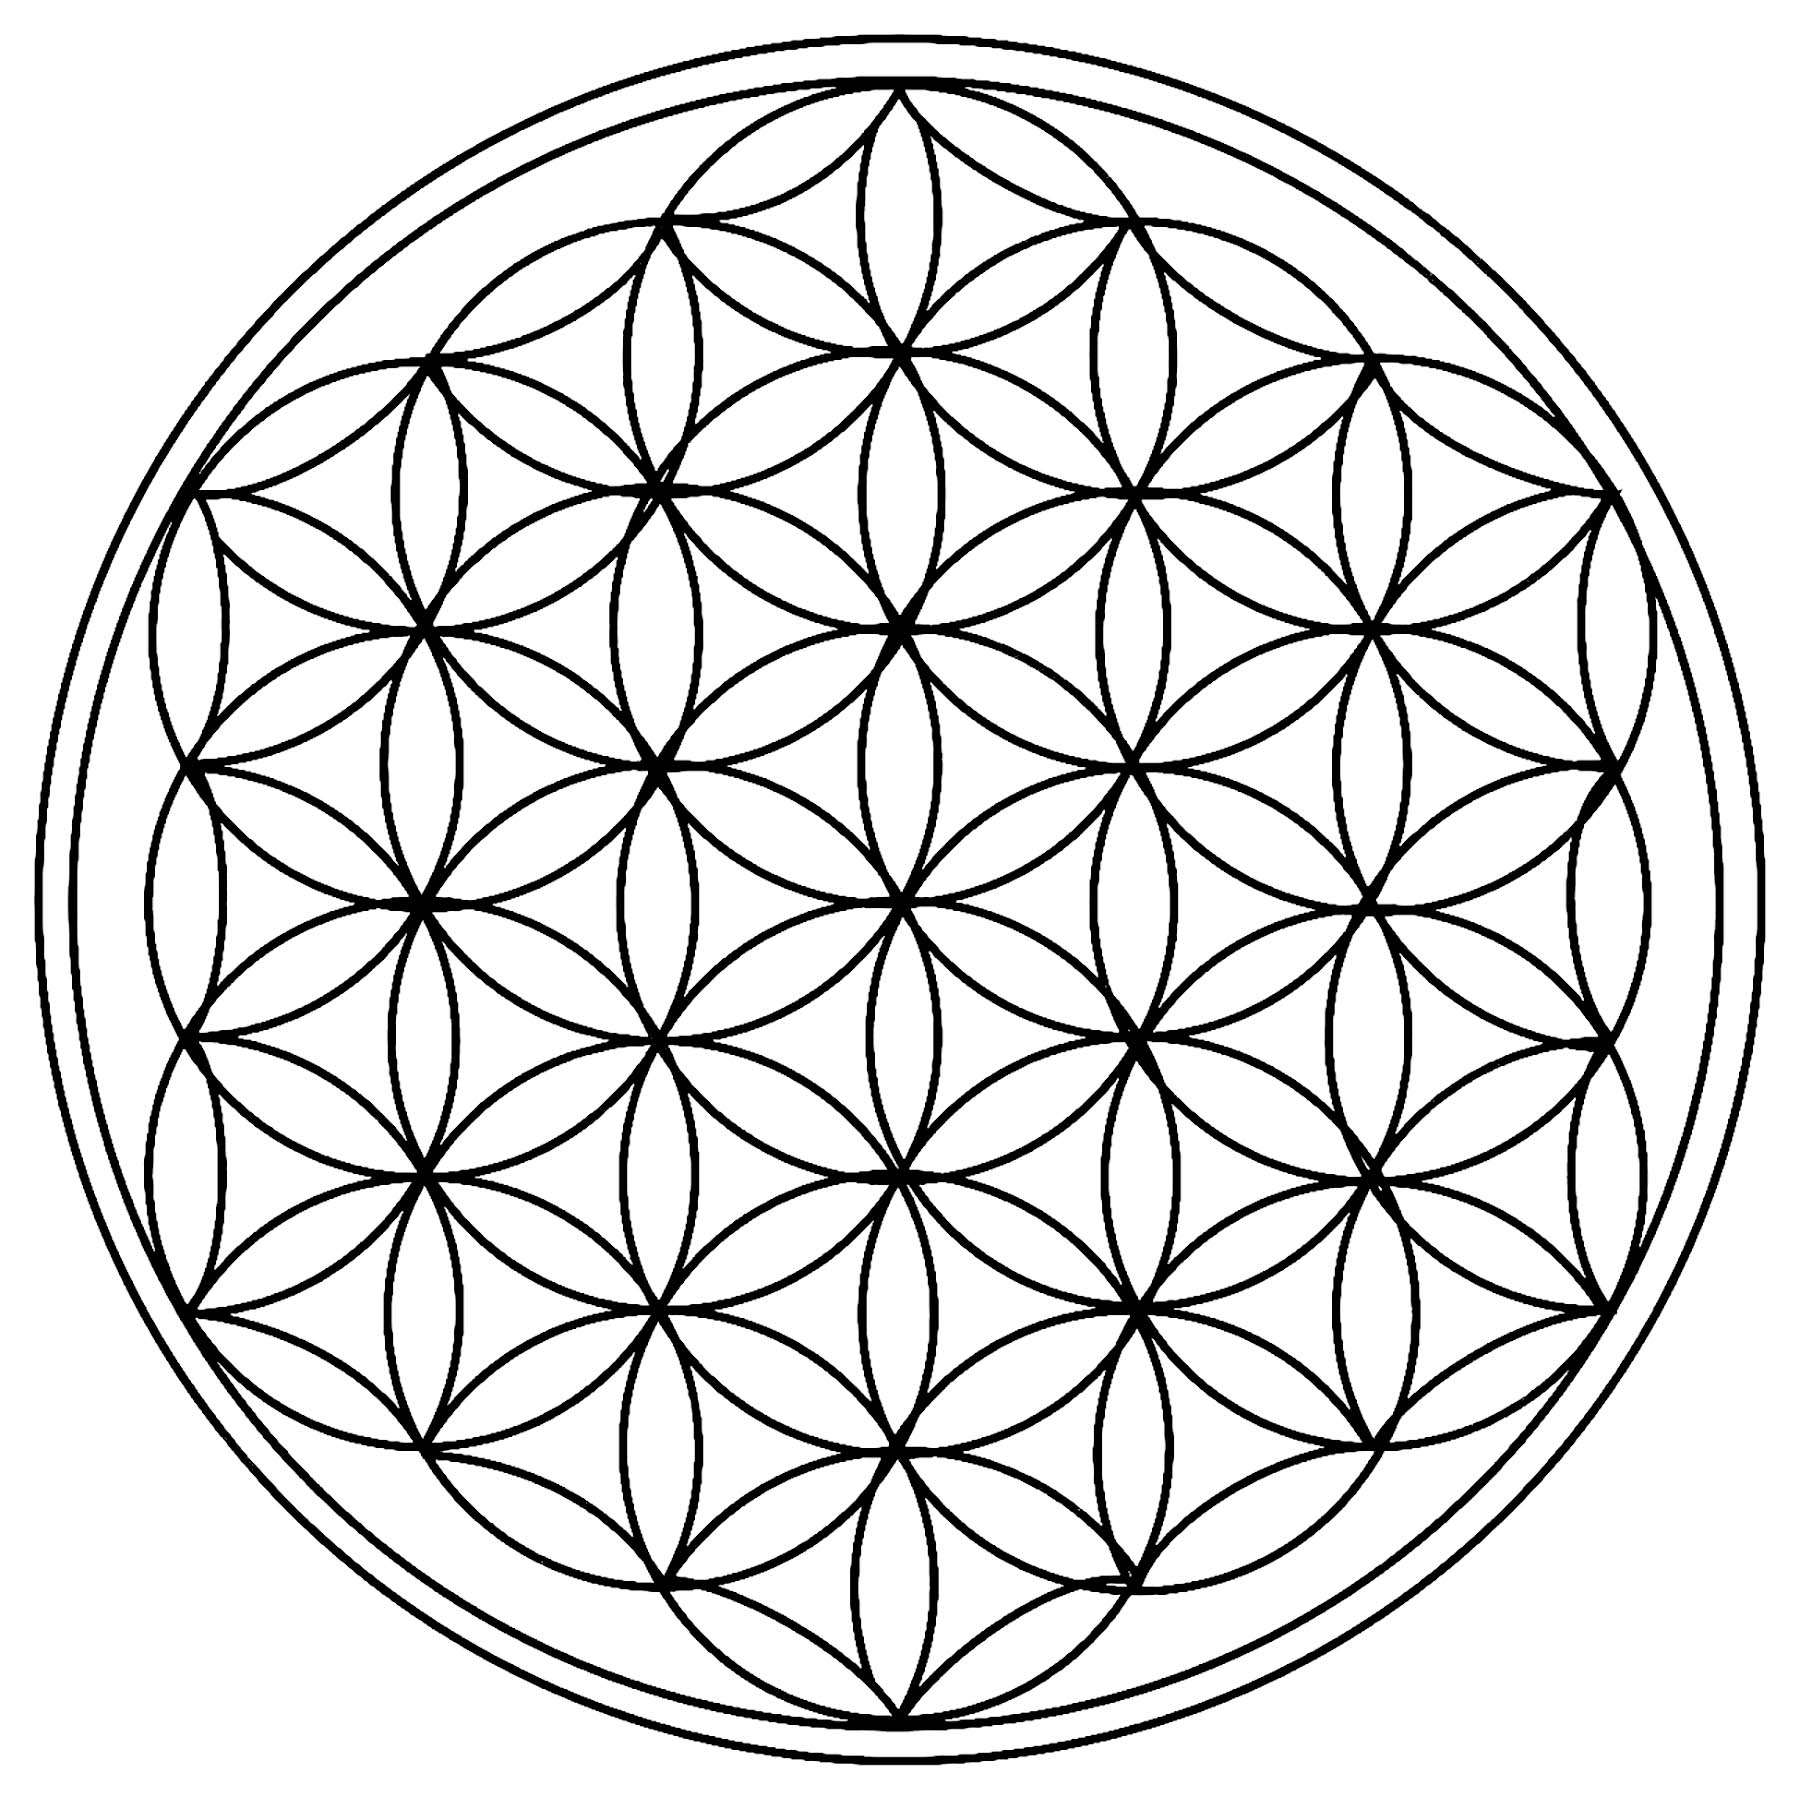 In diesem Mandala gibt es nur Kreise! Und ja, schauen Sie genau hin